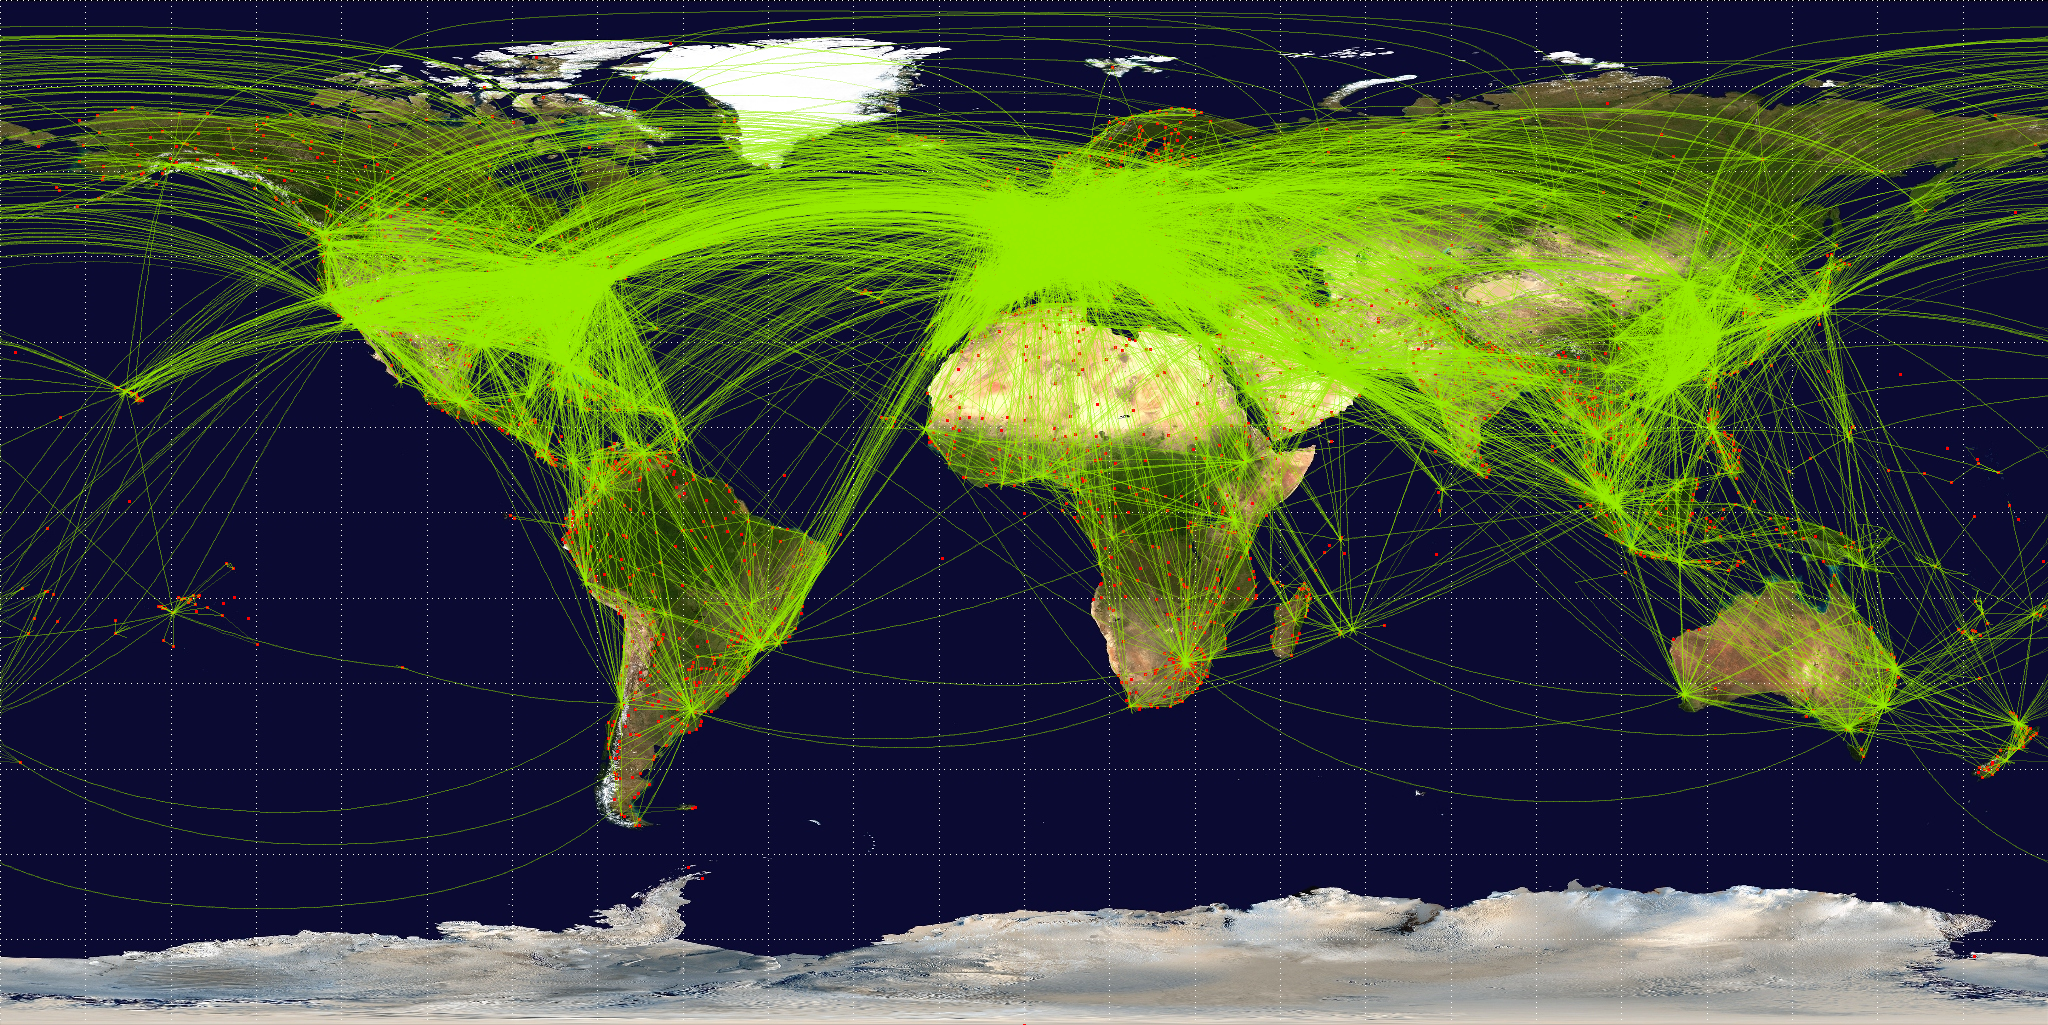 Een visualisatie van 54317 wereldwijde vliegroutes. Afbeelding via [Wikipedia](https://commons.wikimedia.org/wiki/File:World-airline-routemap-2009.png).